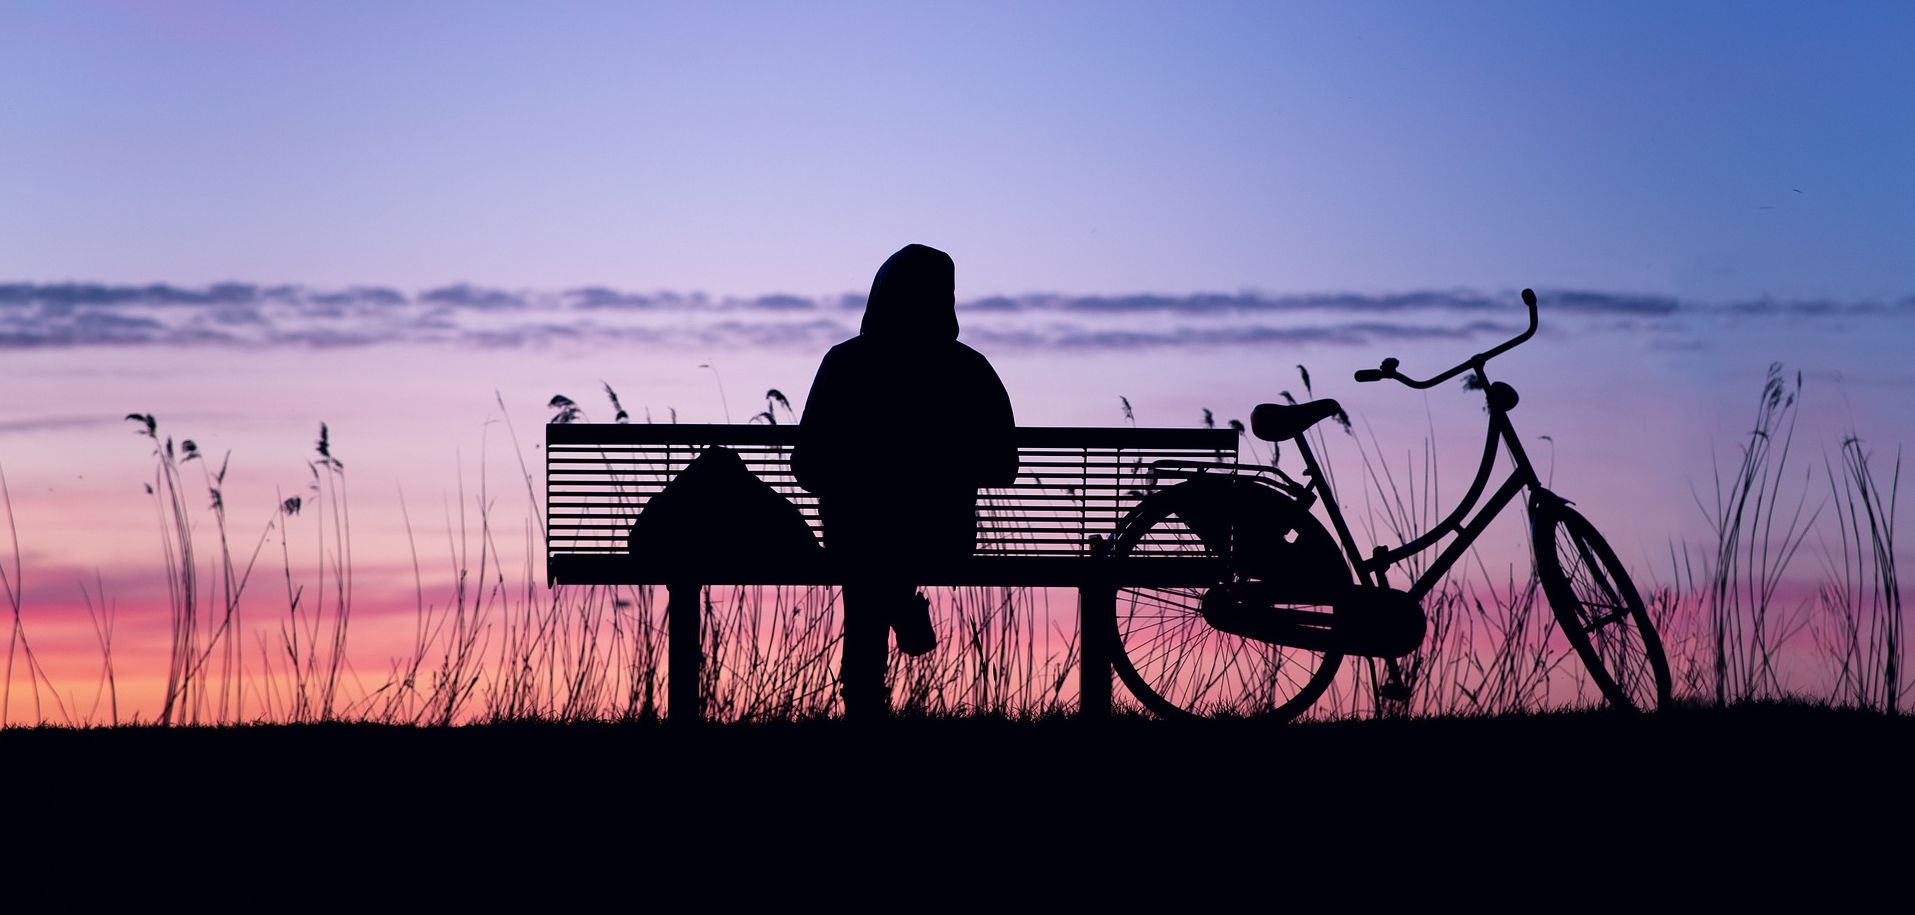 Μοναχικό άτομο καθεται σε παγκάκι ατενίζοντας το ηλιοβασίλεμα